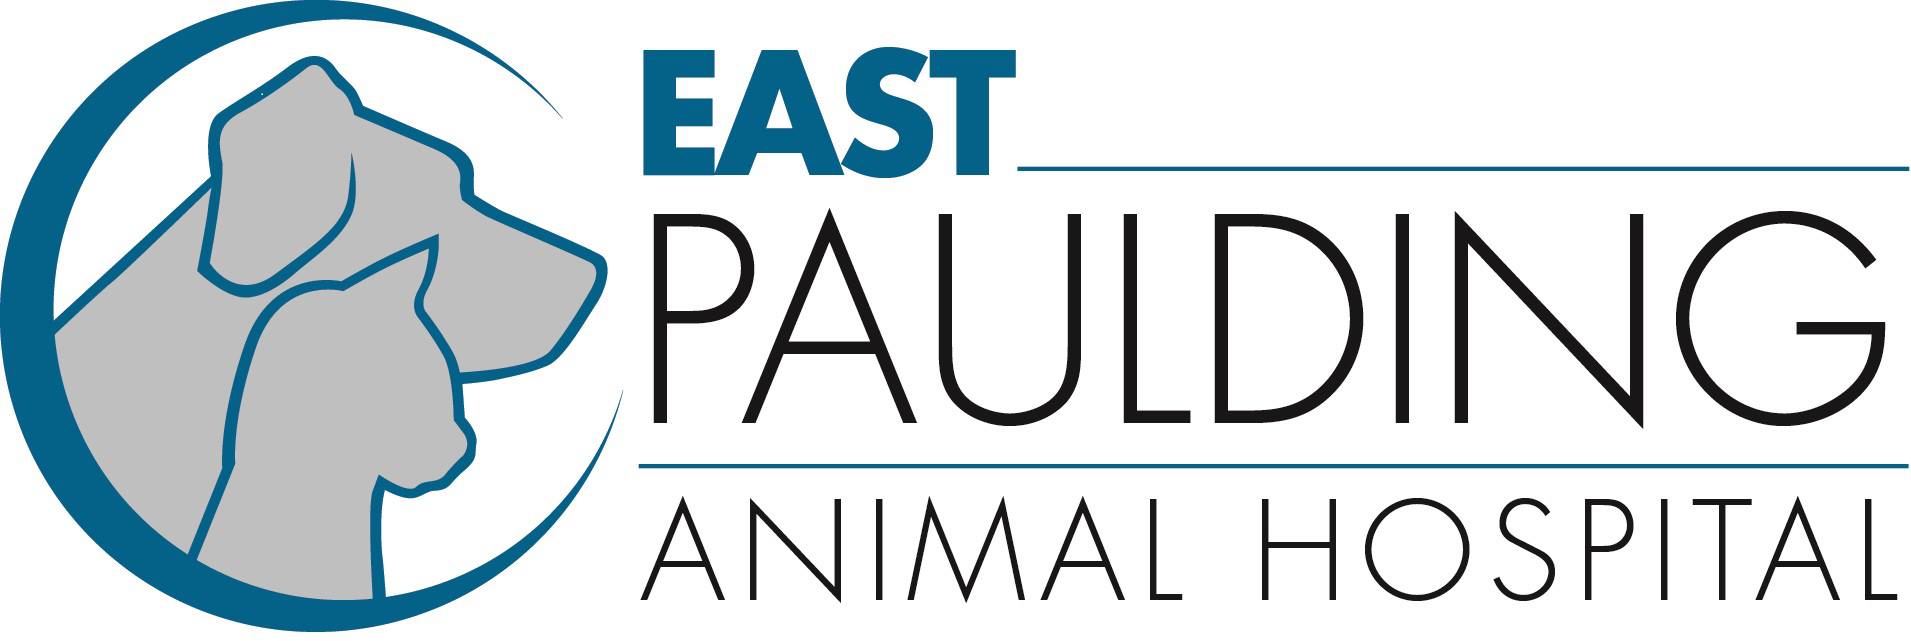 East Paulding Animal Hospital